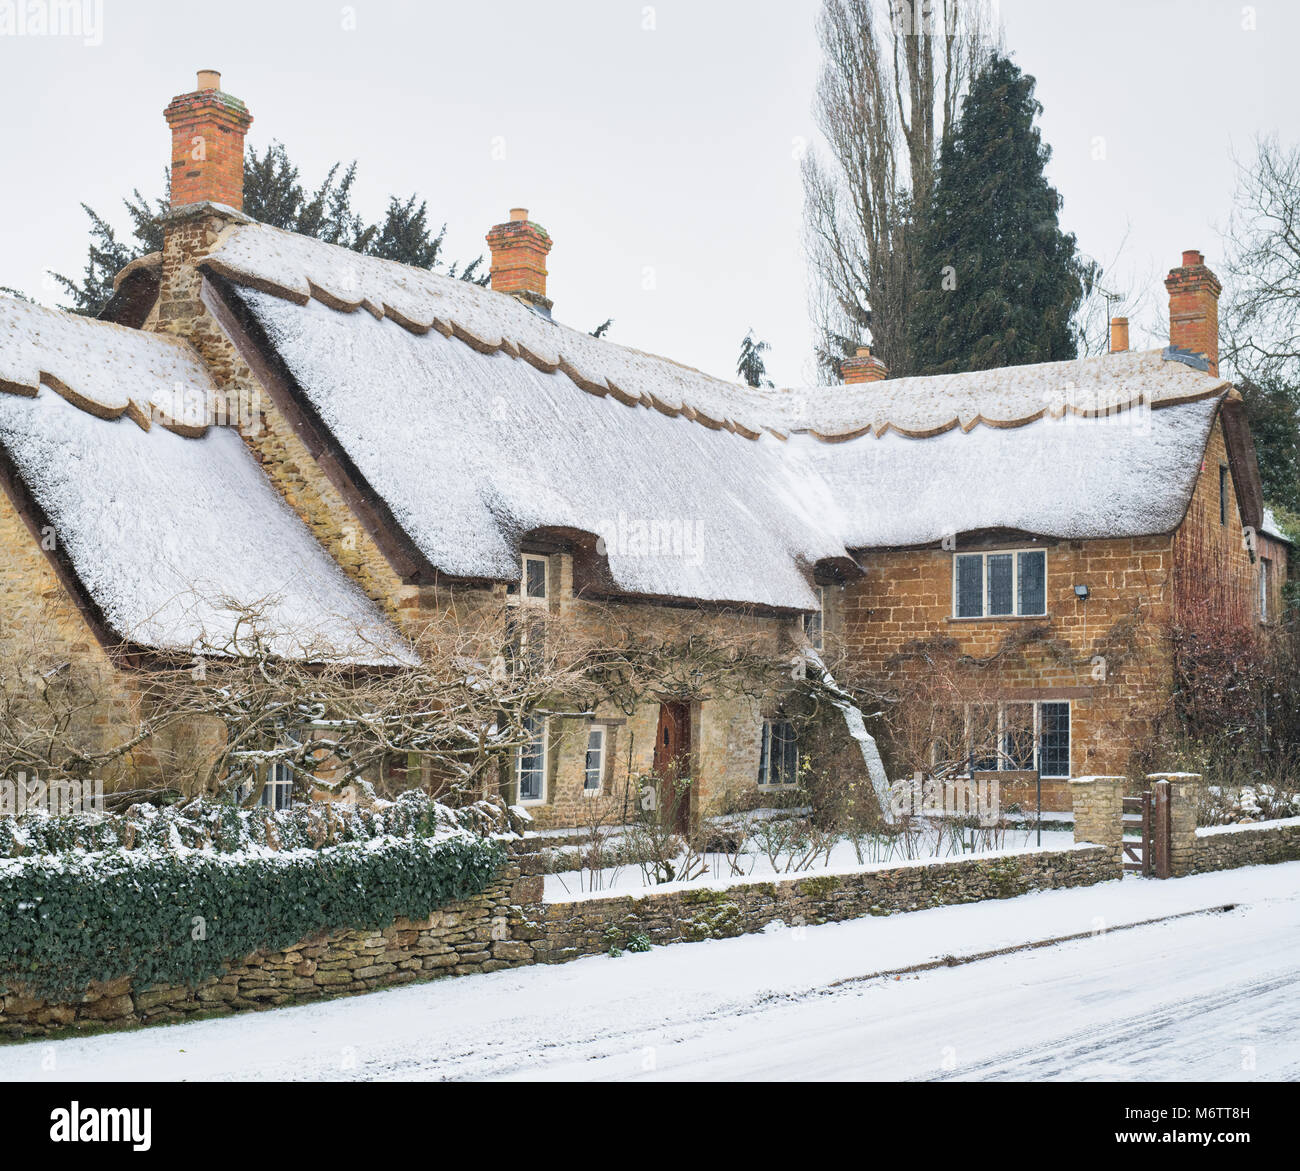 Reetdachhaus in kleinen Tew im Winter Schnee. Wenig Tew, Cotswolds, Oxfordshire, England. Stockfoto